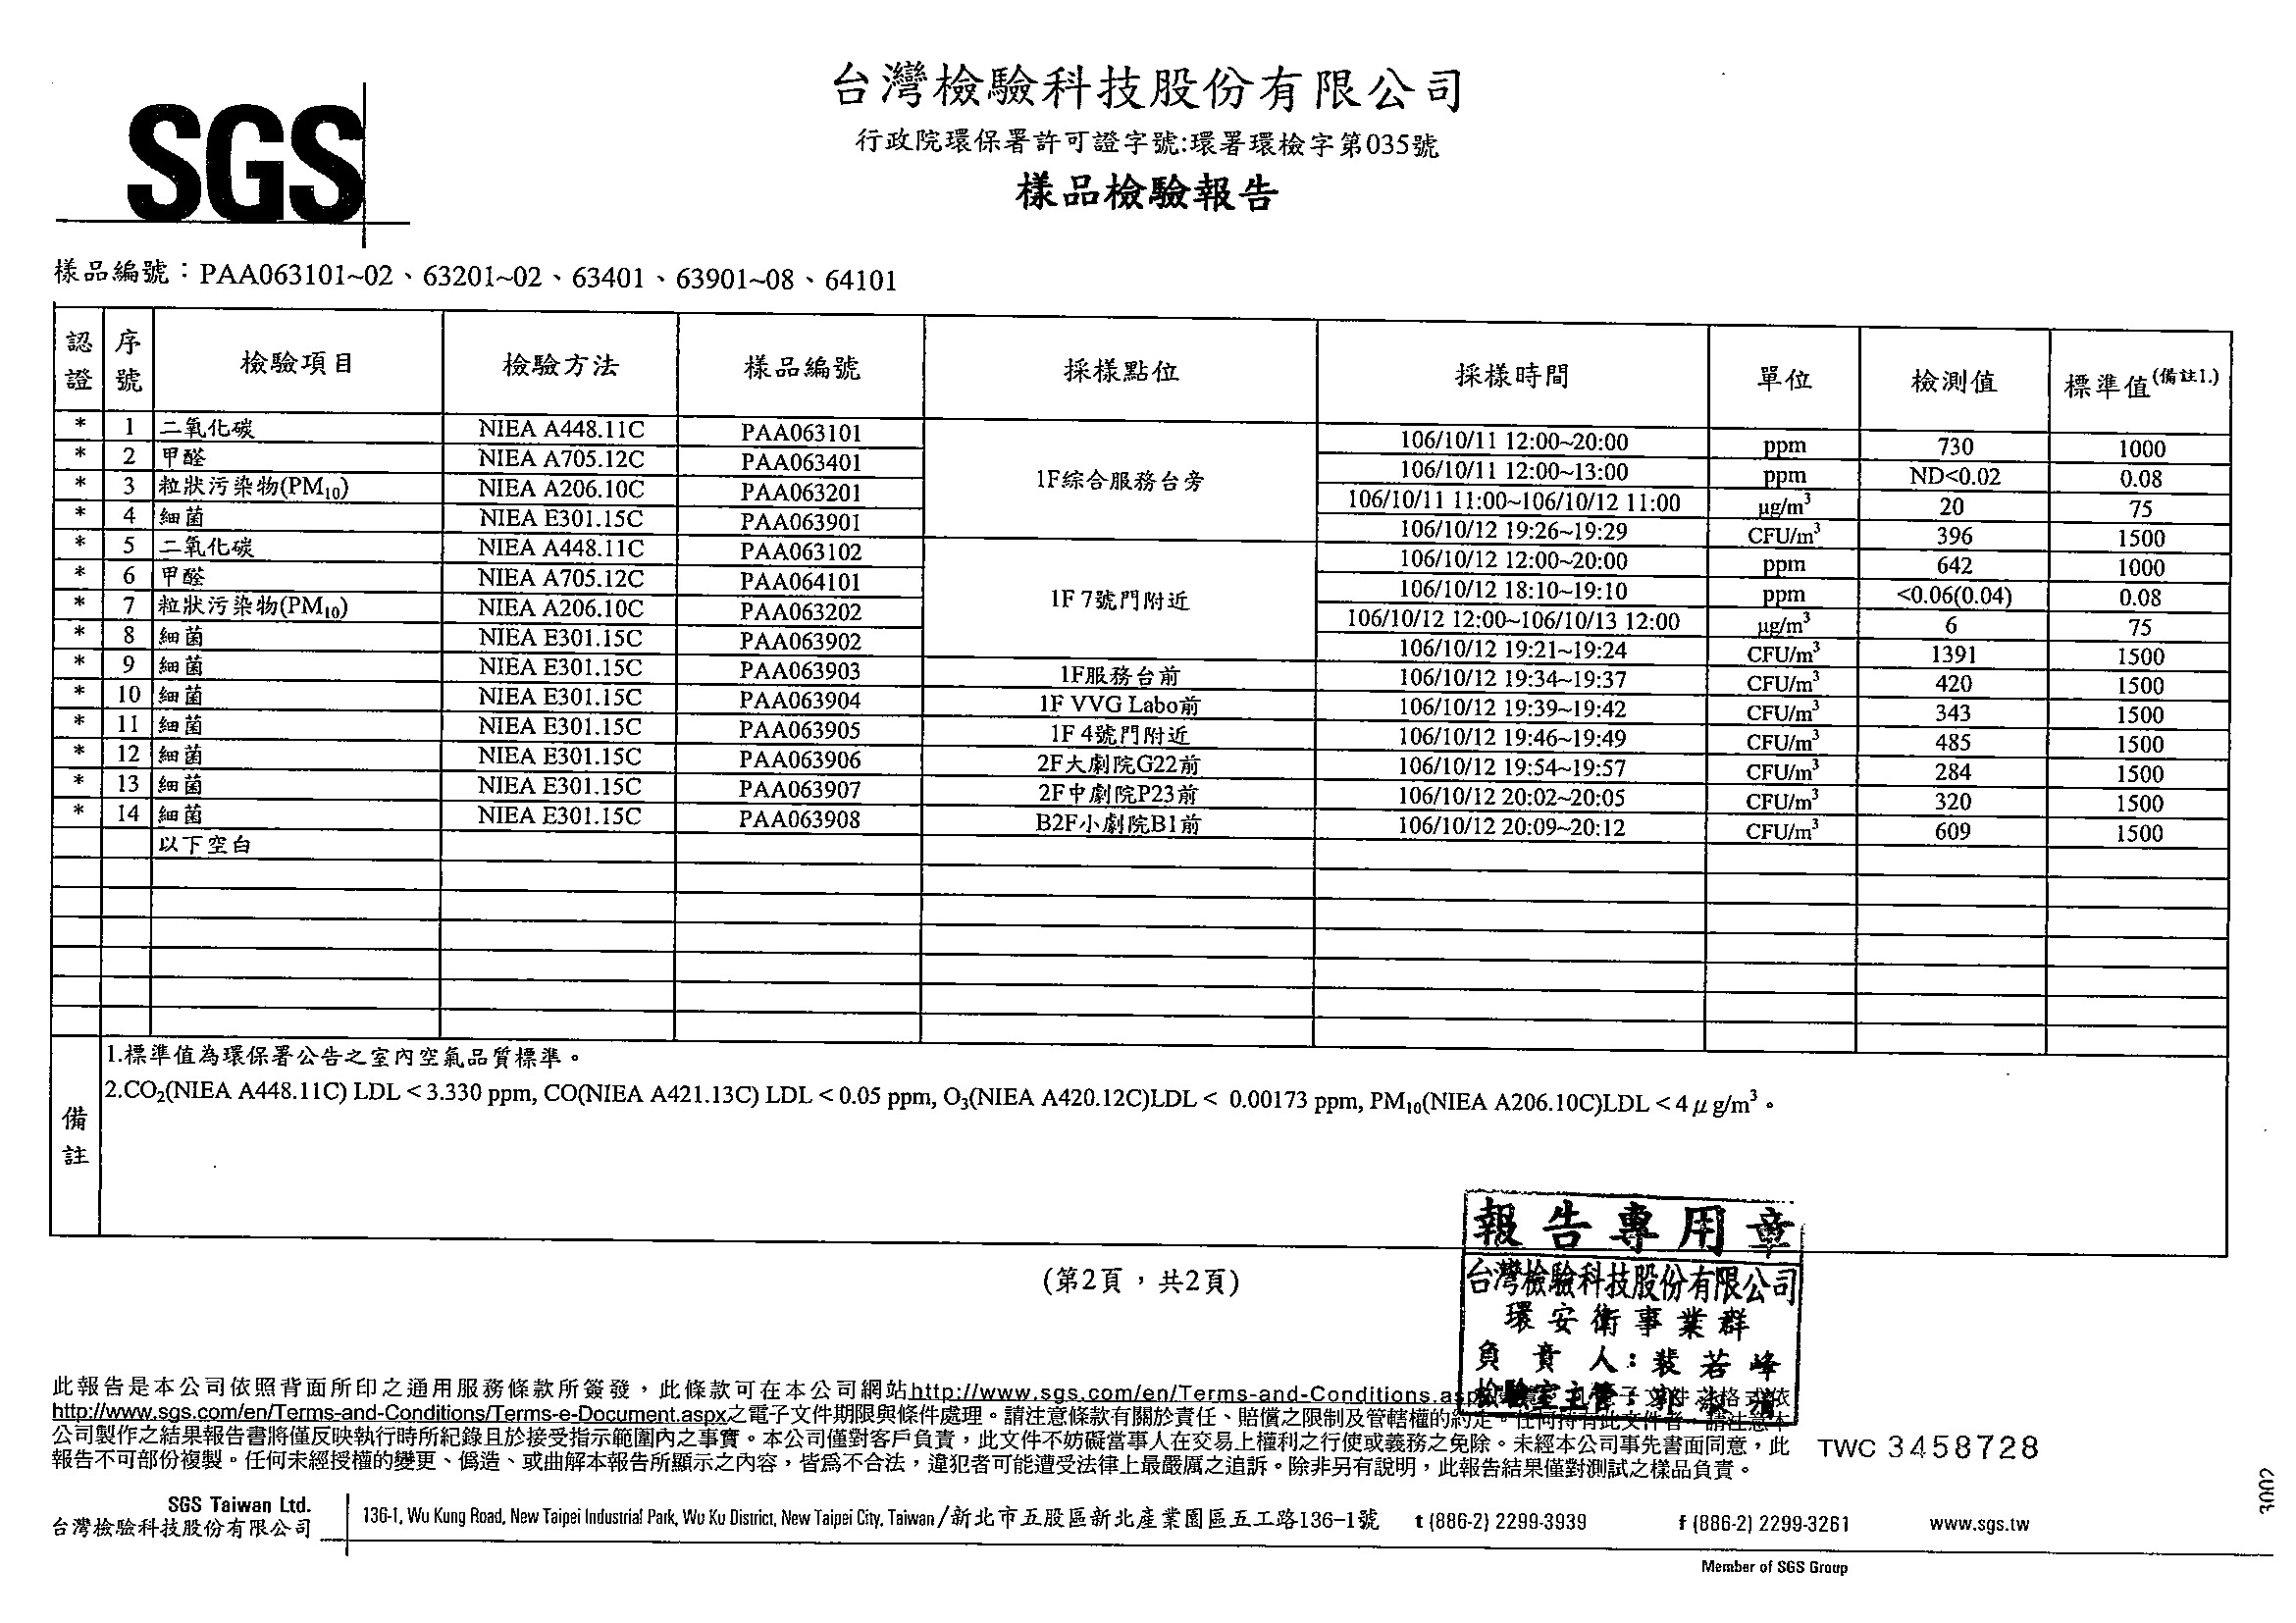 臺中國家歌劇院-室內空氣品質定期檢測報告書-2